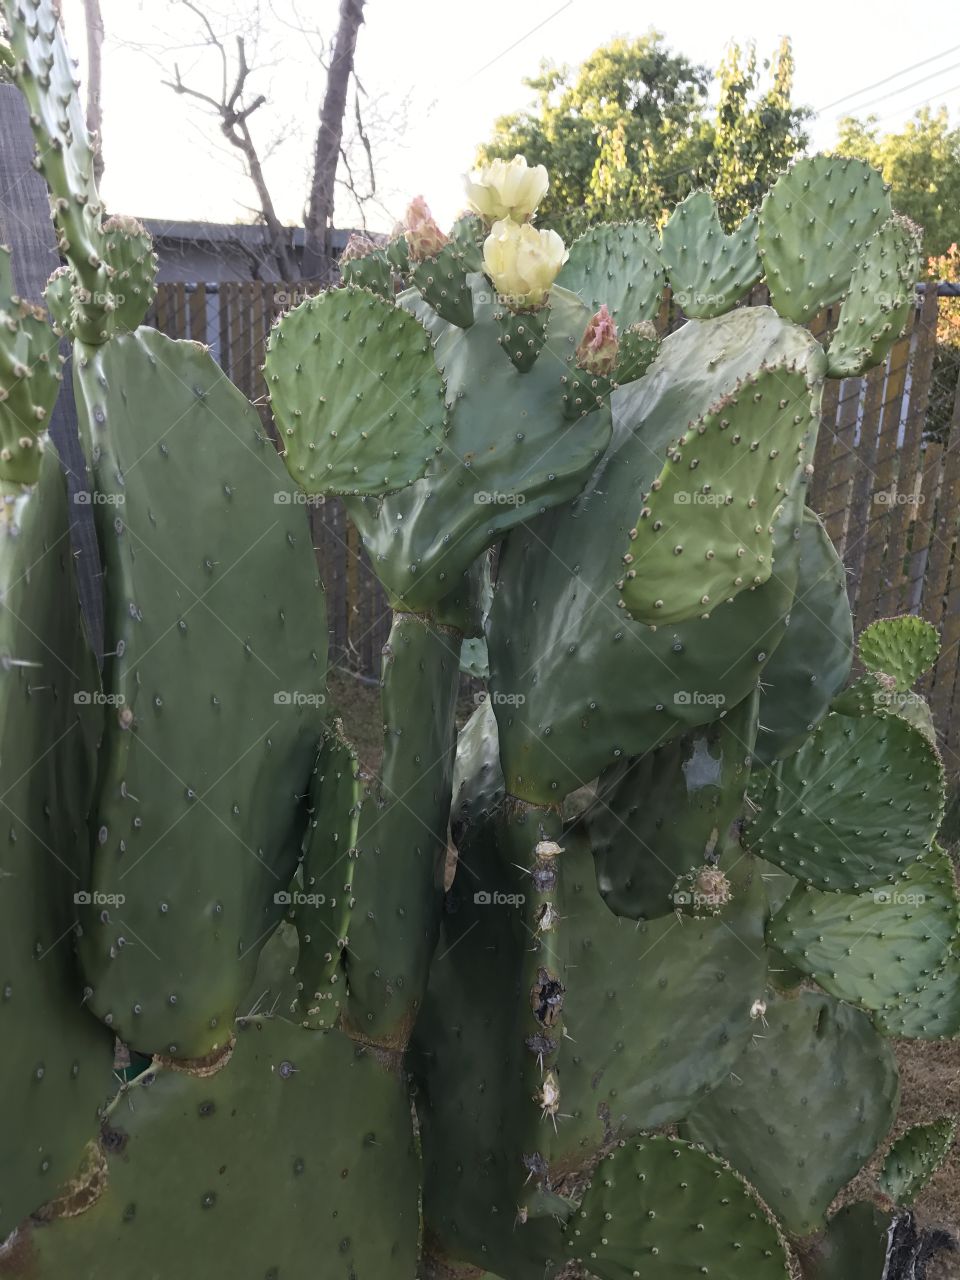 Cactus, Succulent, Spine, Prickly, Sharp